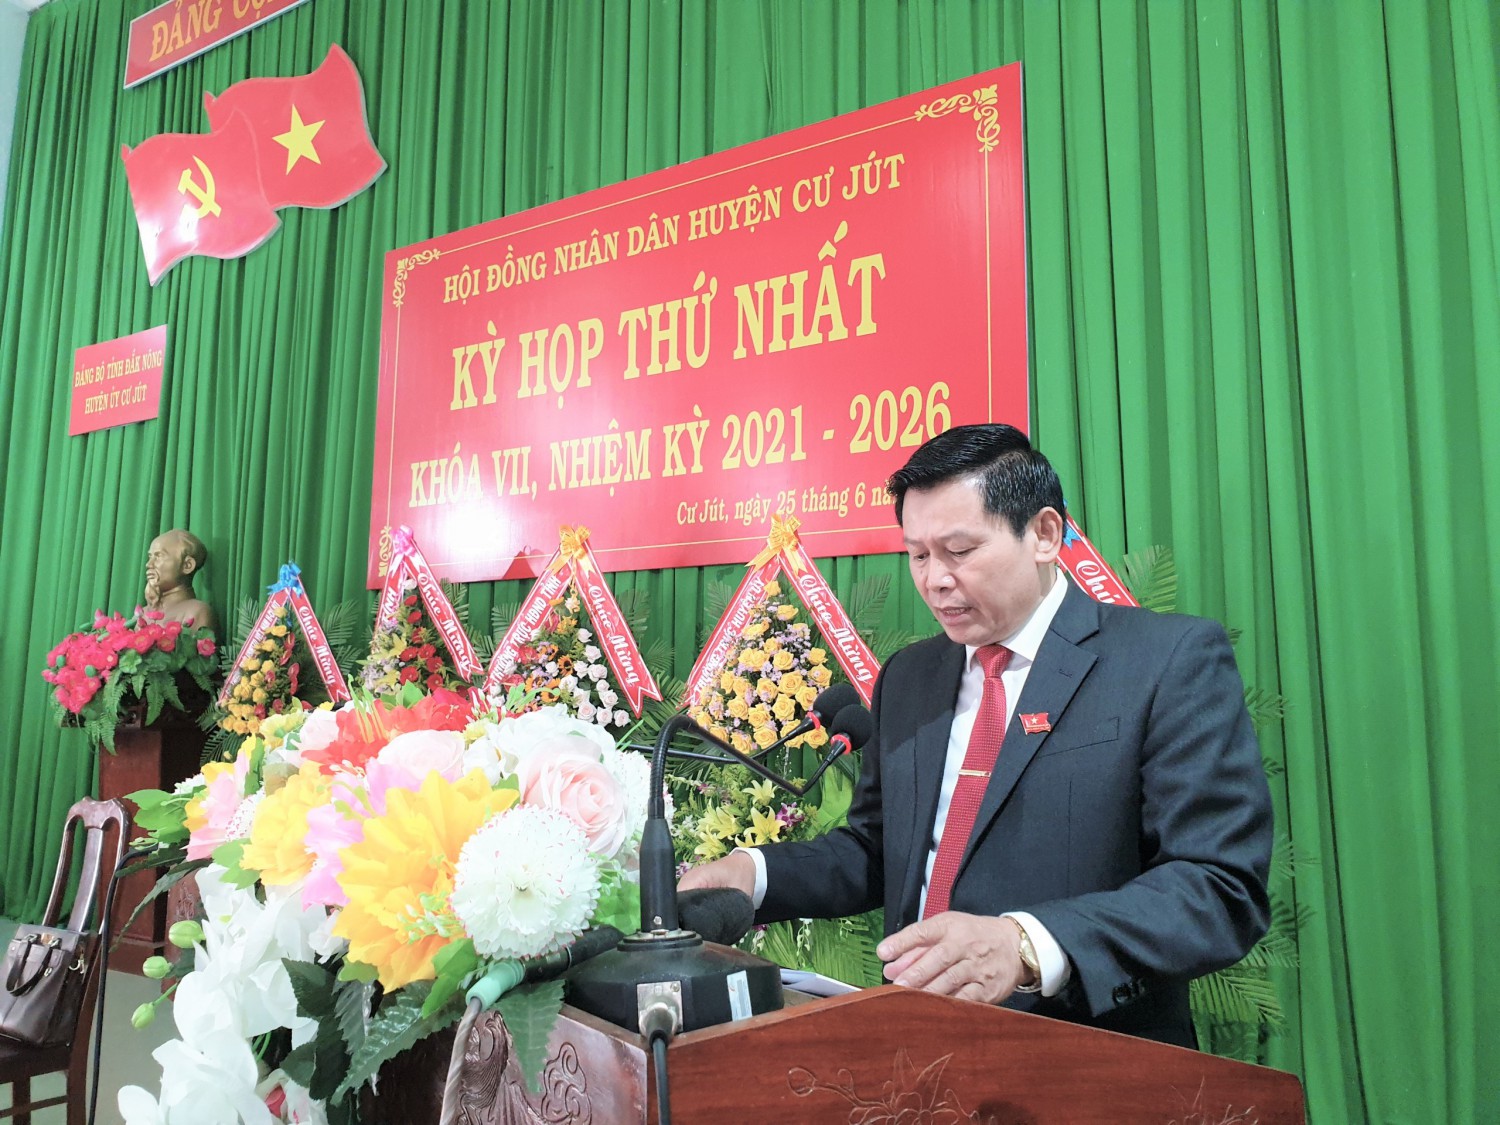 HĐND huyện Cư Jút tổ chức kỳ họp thứ nhất khóa VII, nhiệm kỳ 2021 - 2026